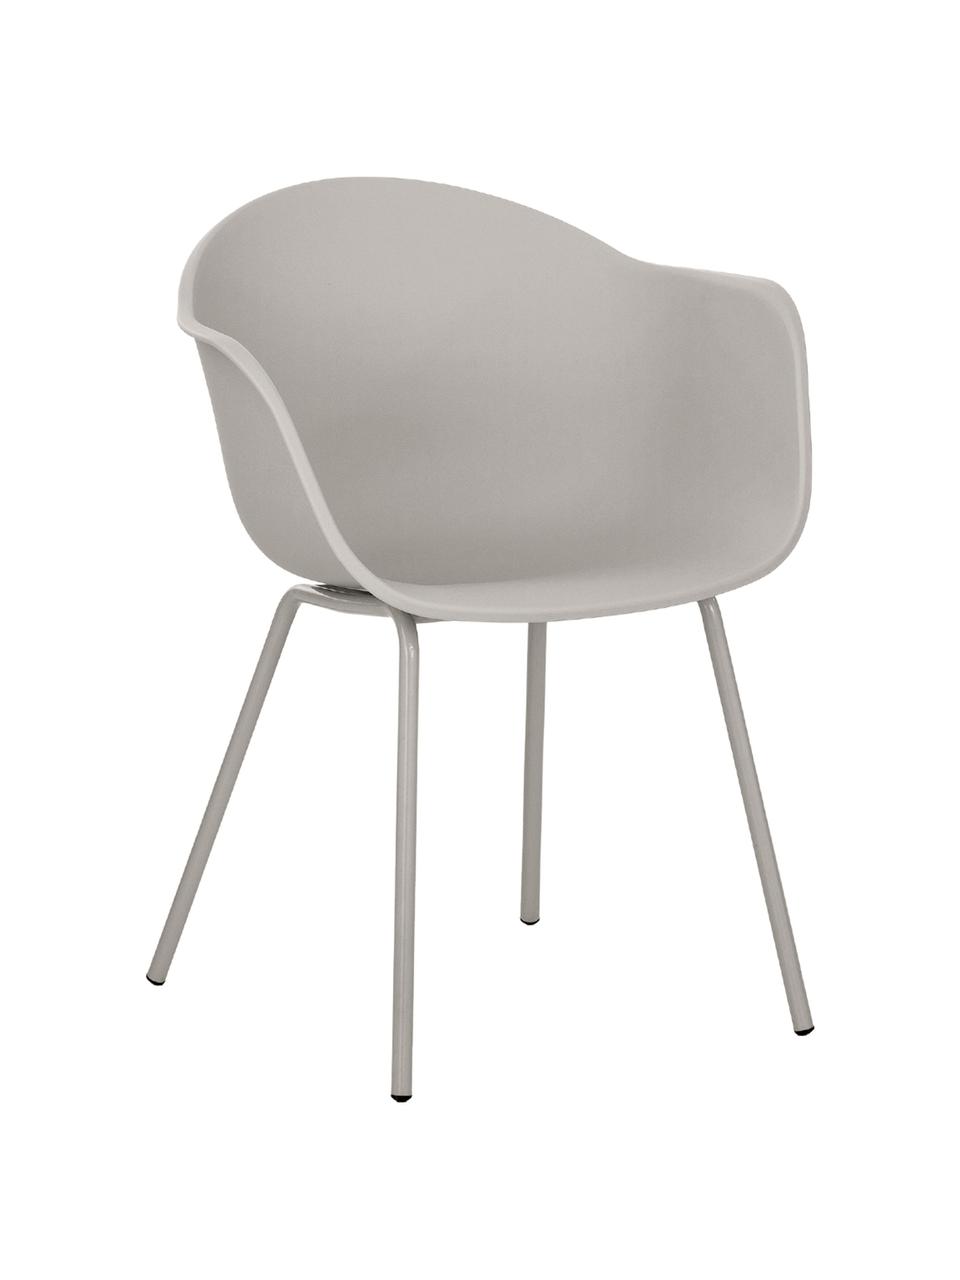 Krzesło z podłokietnikami z tworzywa sztucznego Claire, Nogi: metal malowany proszkowo, Greige, S 60 x G 54 cm